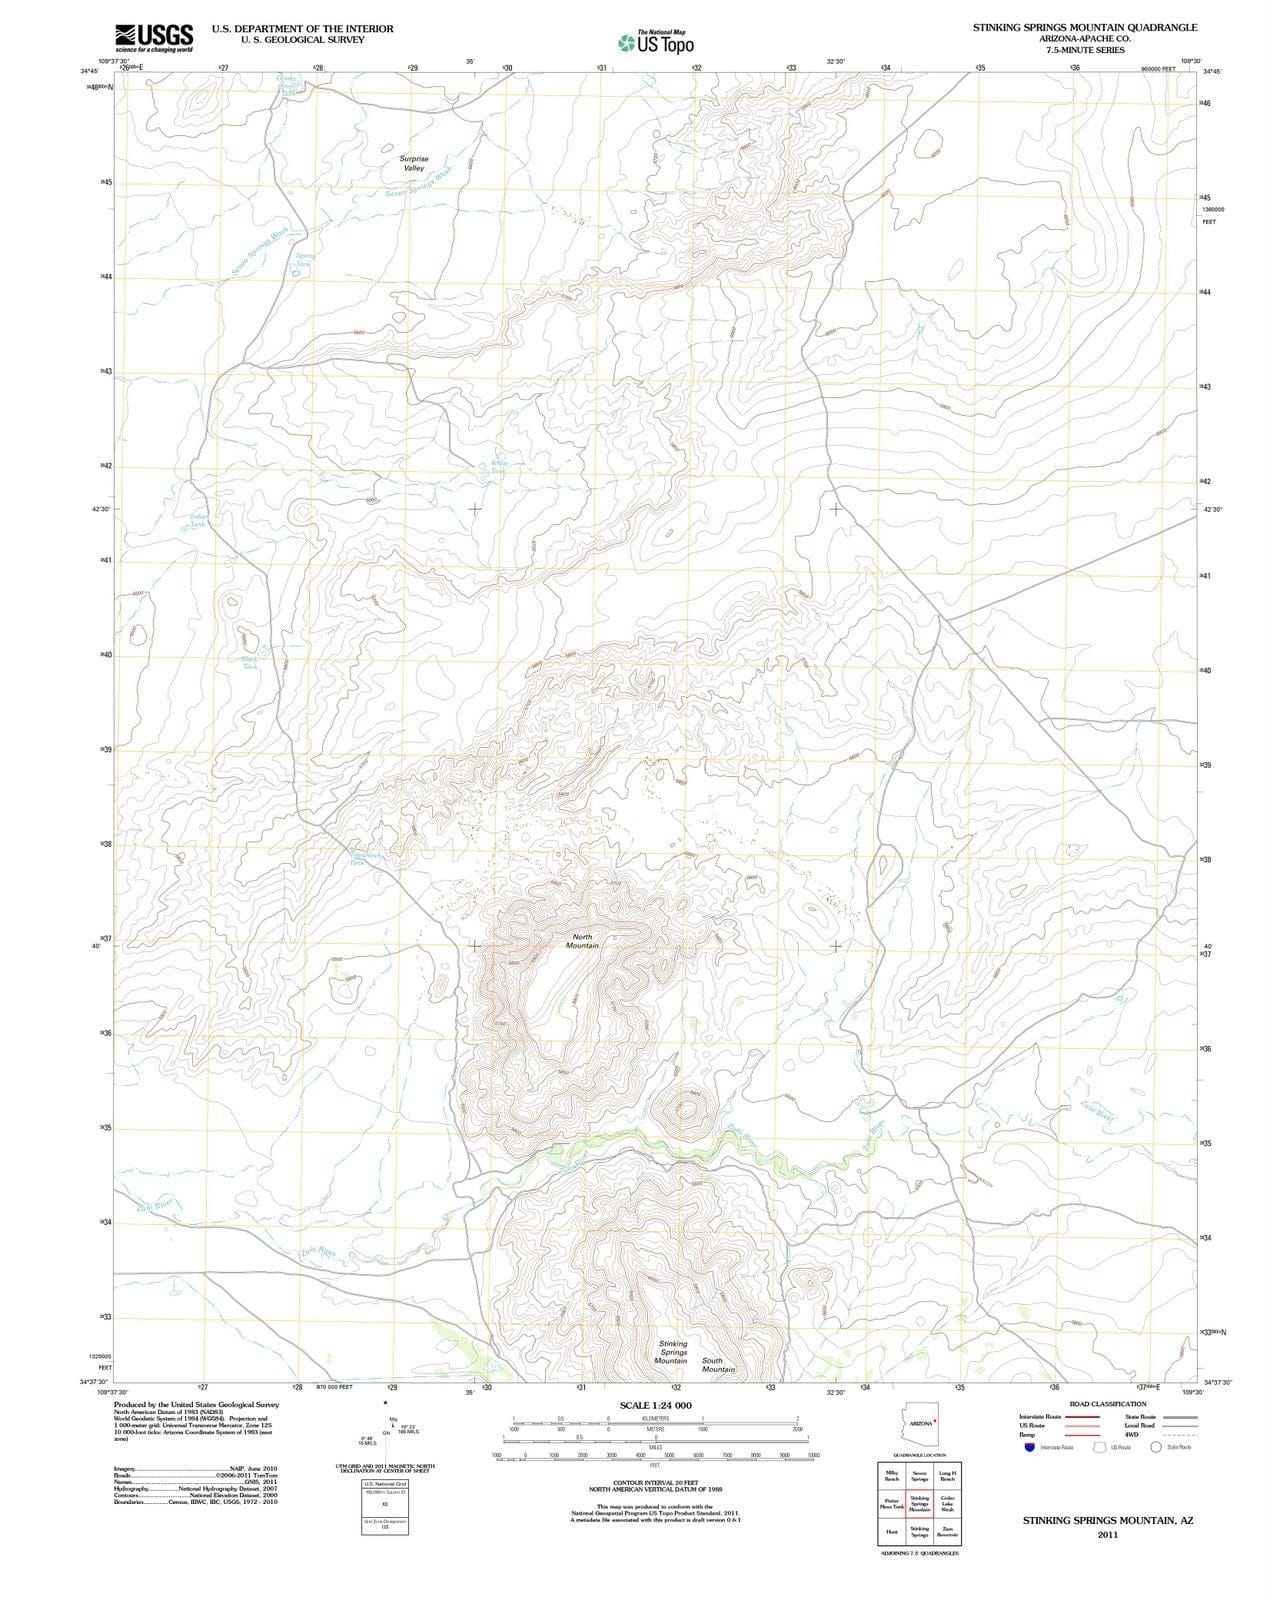 2011 Stinking Springs Mountain, AZ - Arizona - USGS Topographic Map